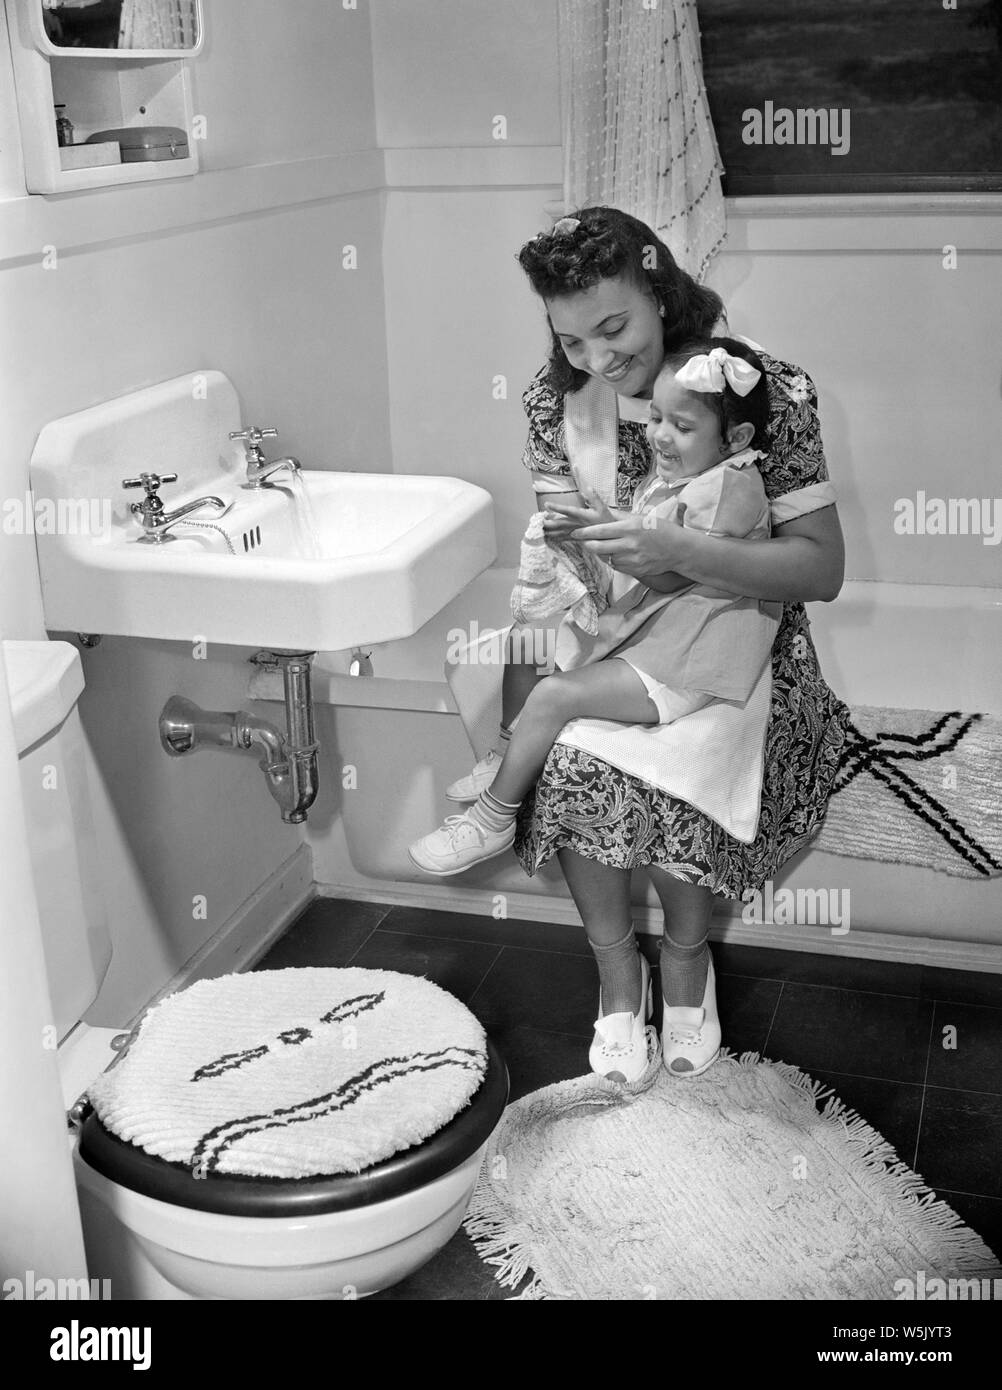 Mère et fille dans la salle de bain, Projet de logement de Frederick Douglass, Quartier Anacostia, Washington DC, USA, photo de Gordon Parks, Juillet 1942 Banque D'Images